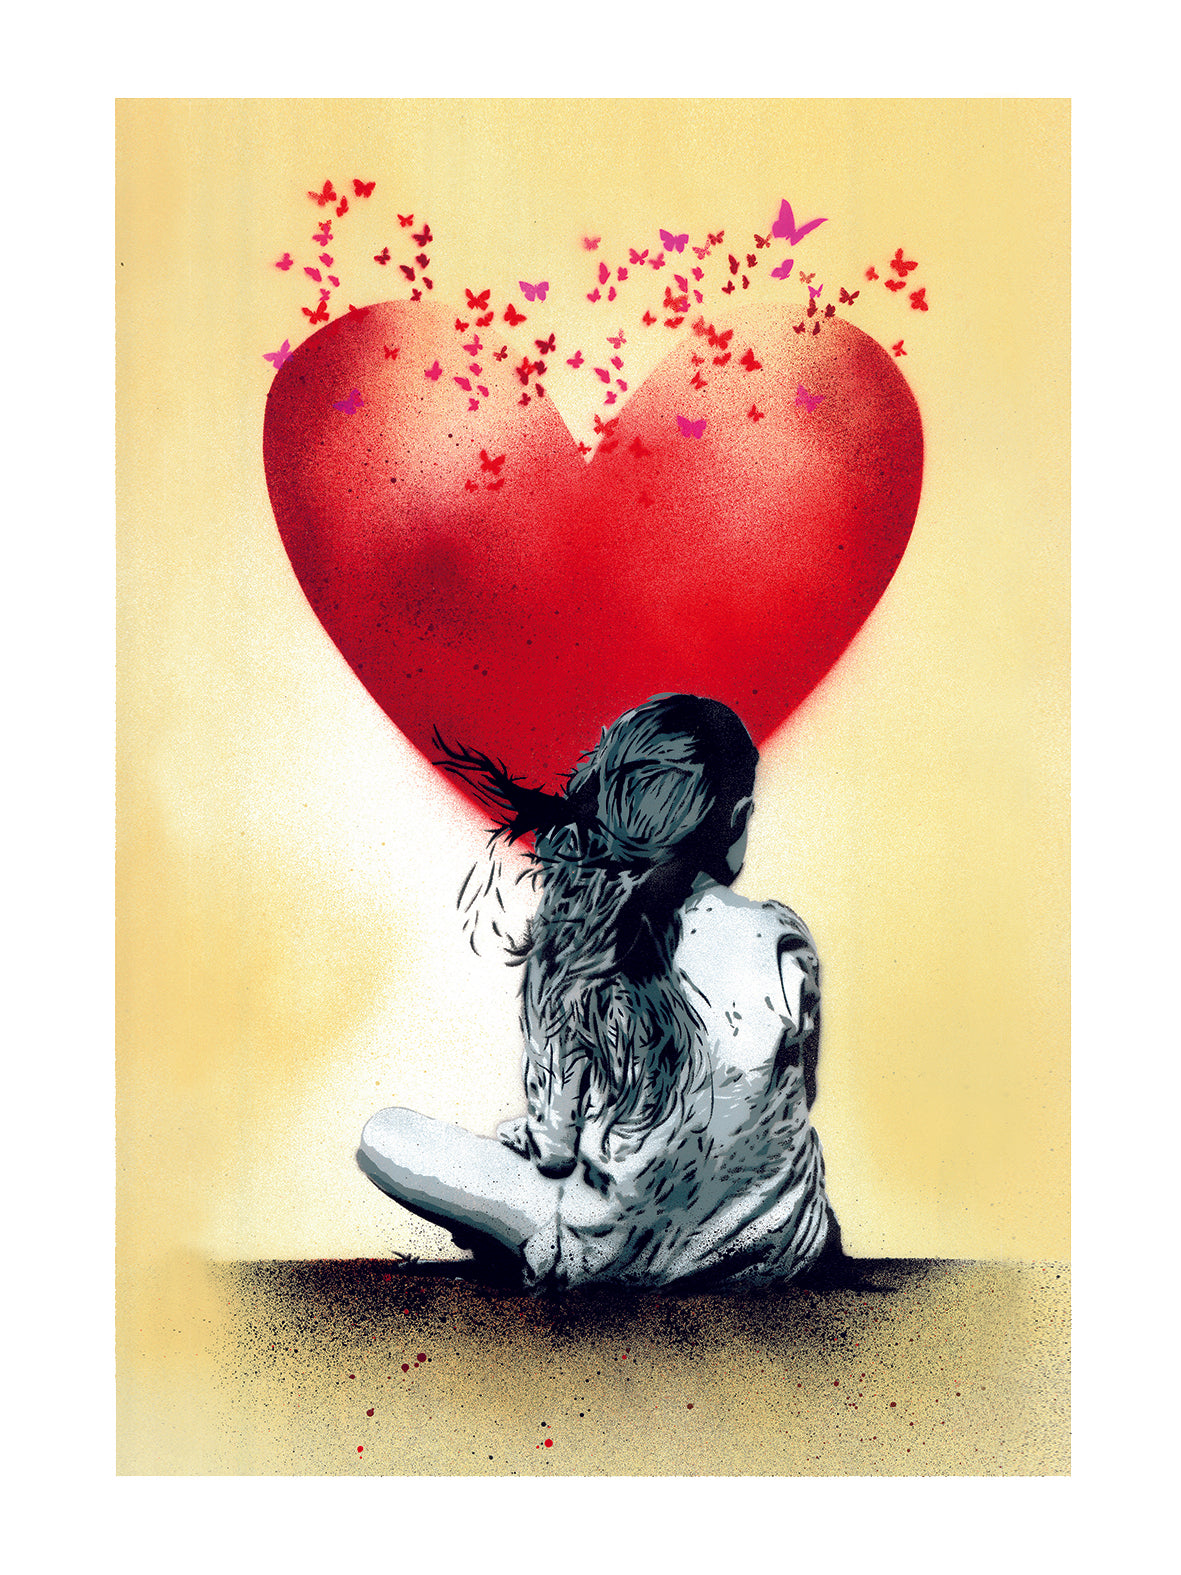 Dream Butterfly Edition di Any. Stampa giclée su carta 320 gsm rappresentante una bambina seduta di fronte ad un grande cuore rosso dal quale escono delle farfalle | Cd Studio d'Arte